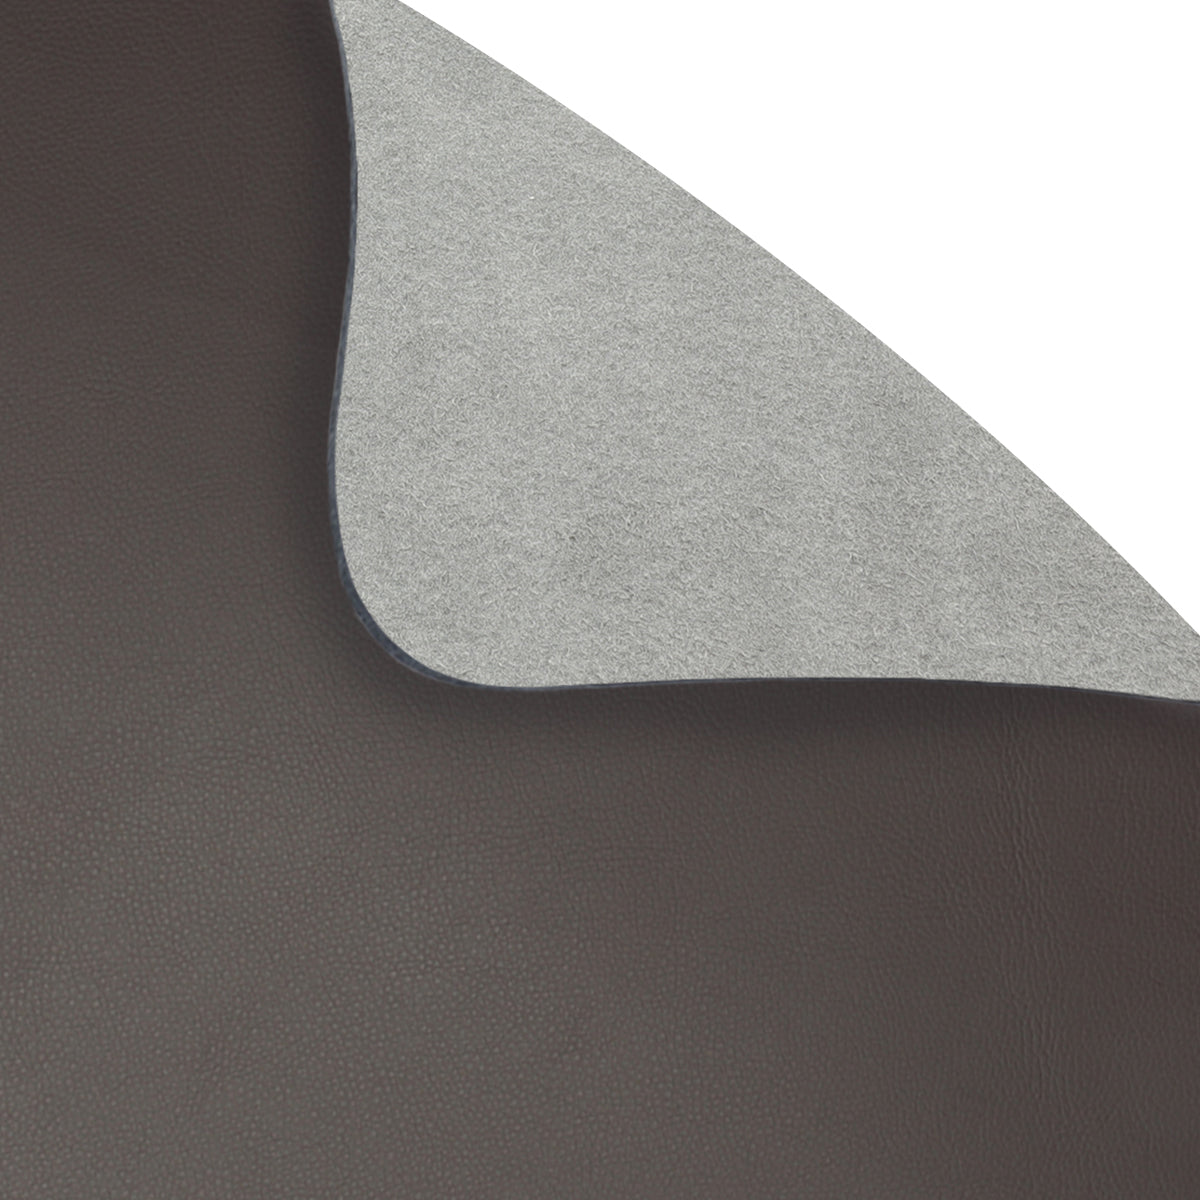 (12 stk.) James dækkeserviet - elegant læderlook - 33 x 46 cm - mokka